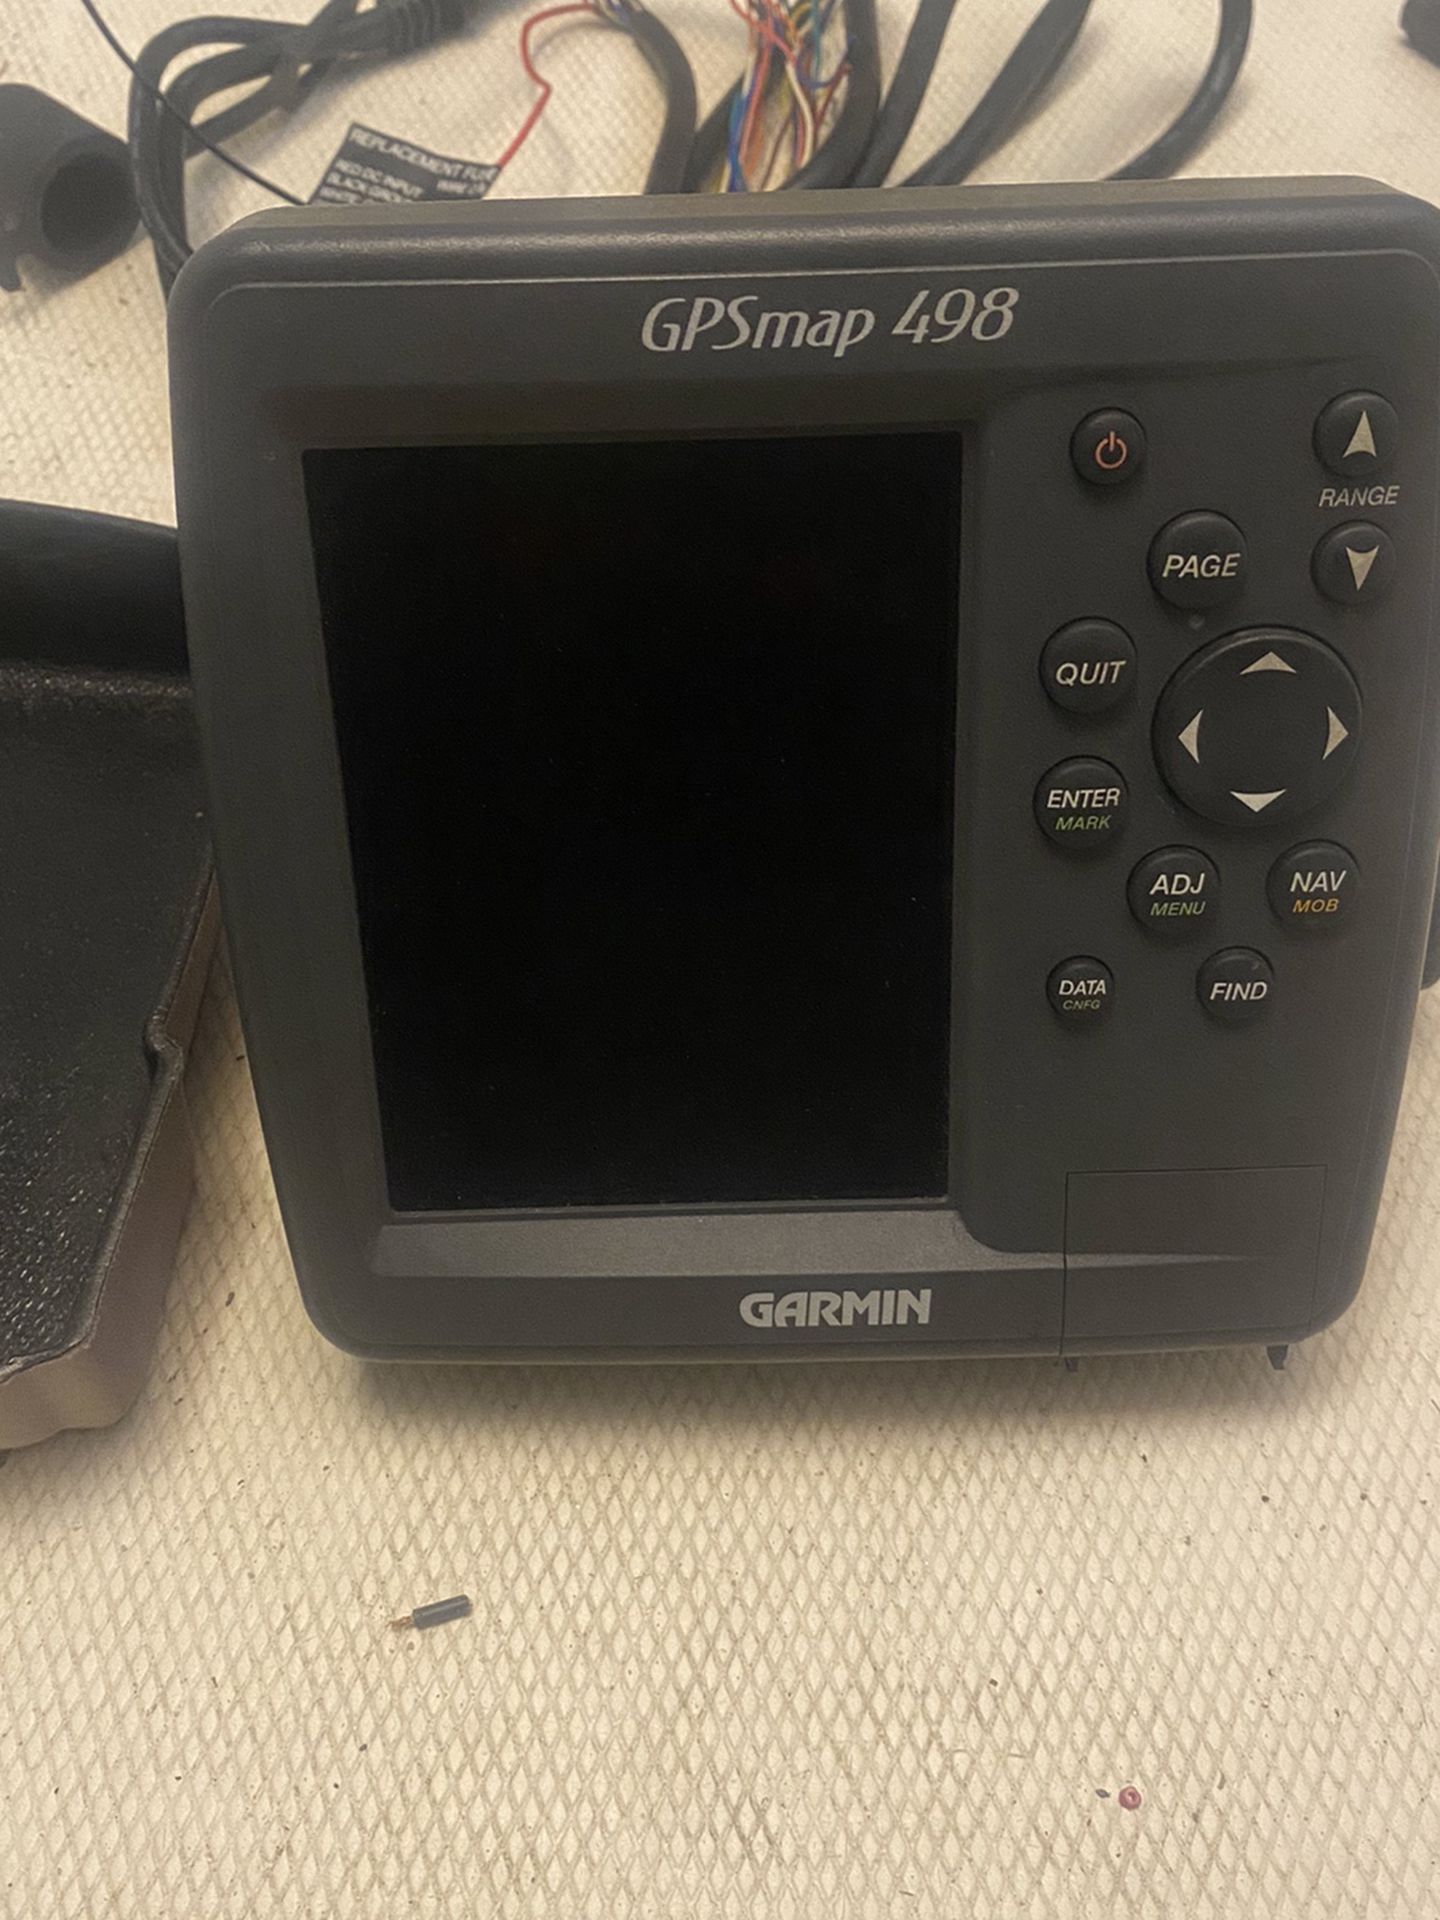 GPSMAP 498 Sounder Garmin